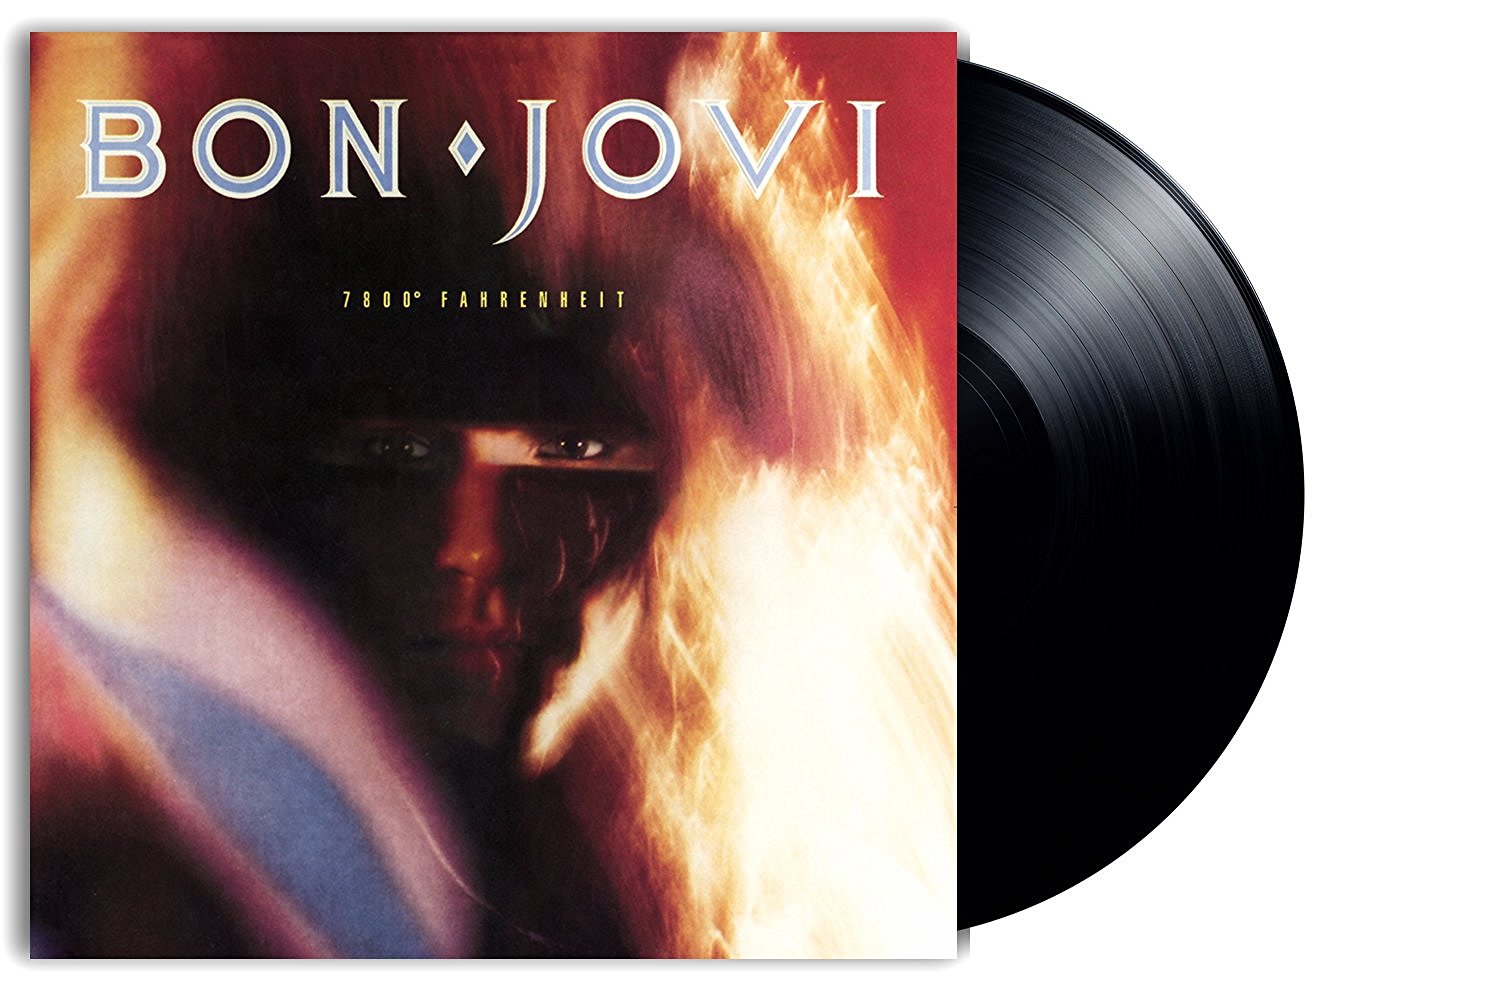 Vinile Bon Jovi - 7800 Degrees Fahrenheit NUOVO SIGILLATO, EDIZIONE DEL 28/10/2016 SUBITO DISPONIBILE